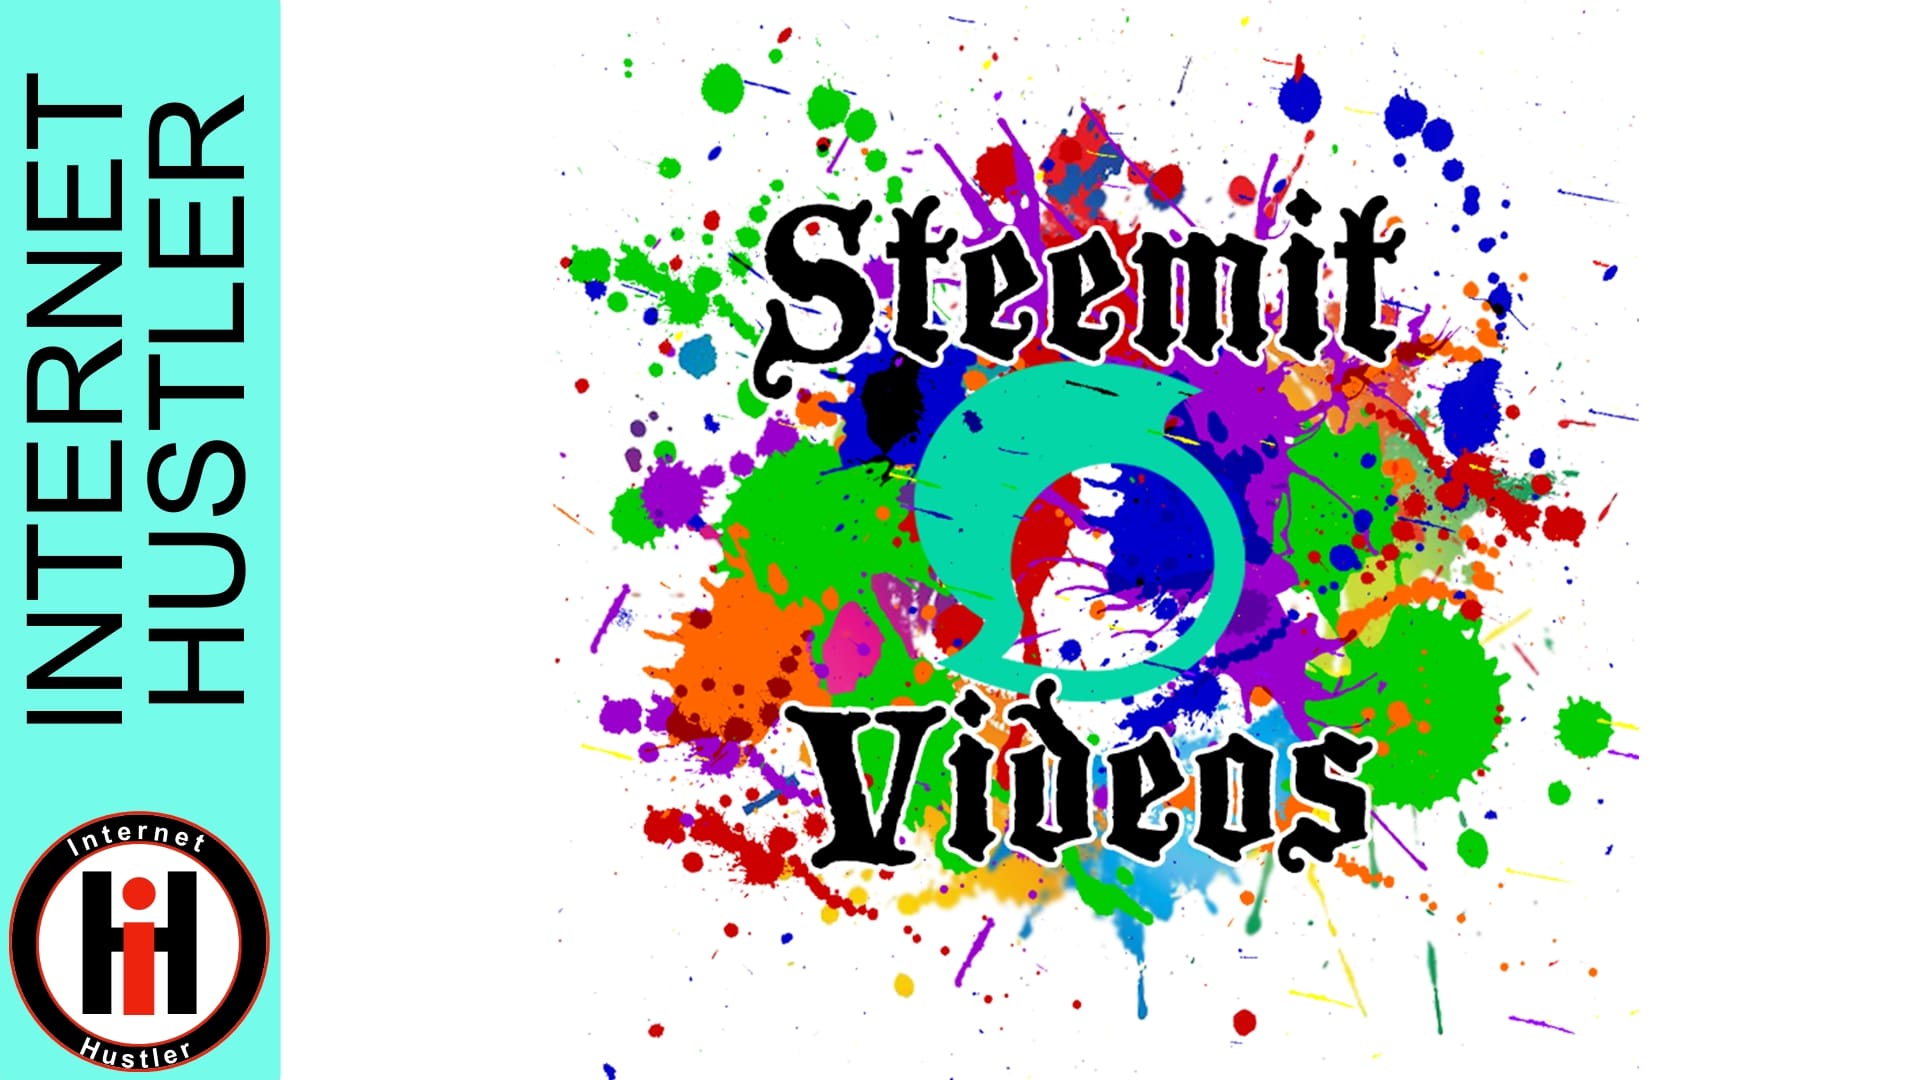 Steemit Videos – Series on How to Succeed on Steemit